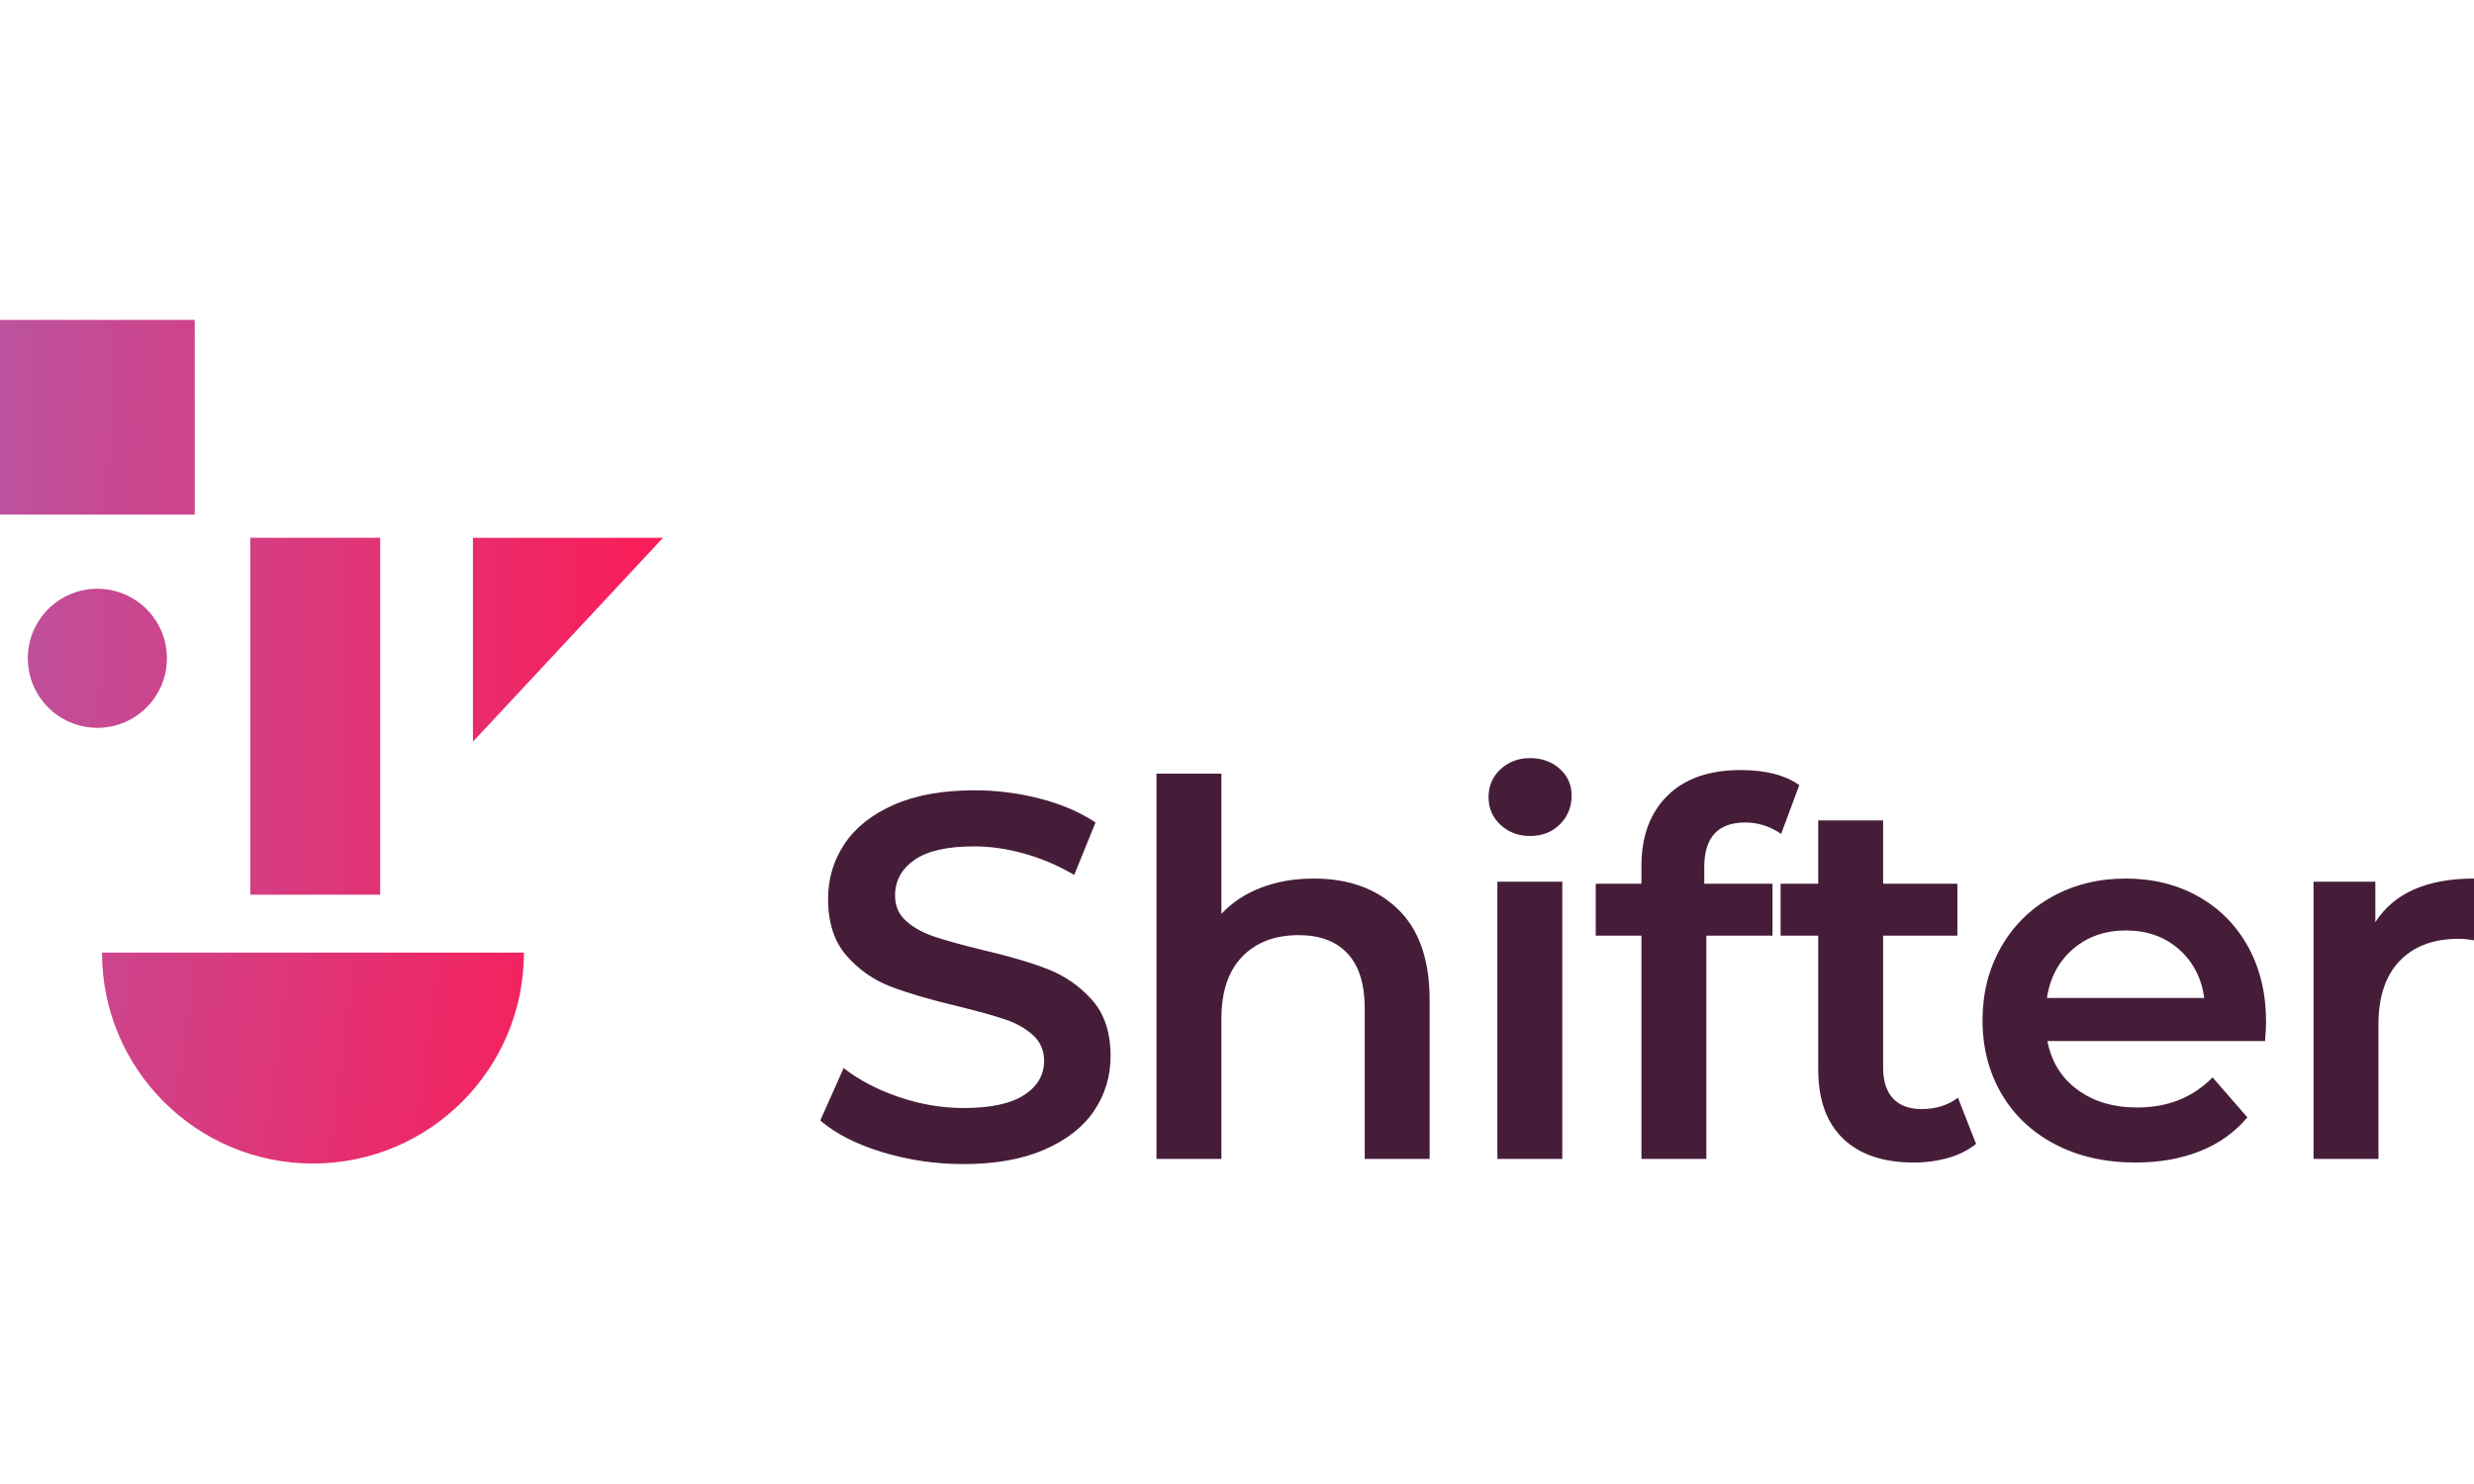 Shifter